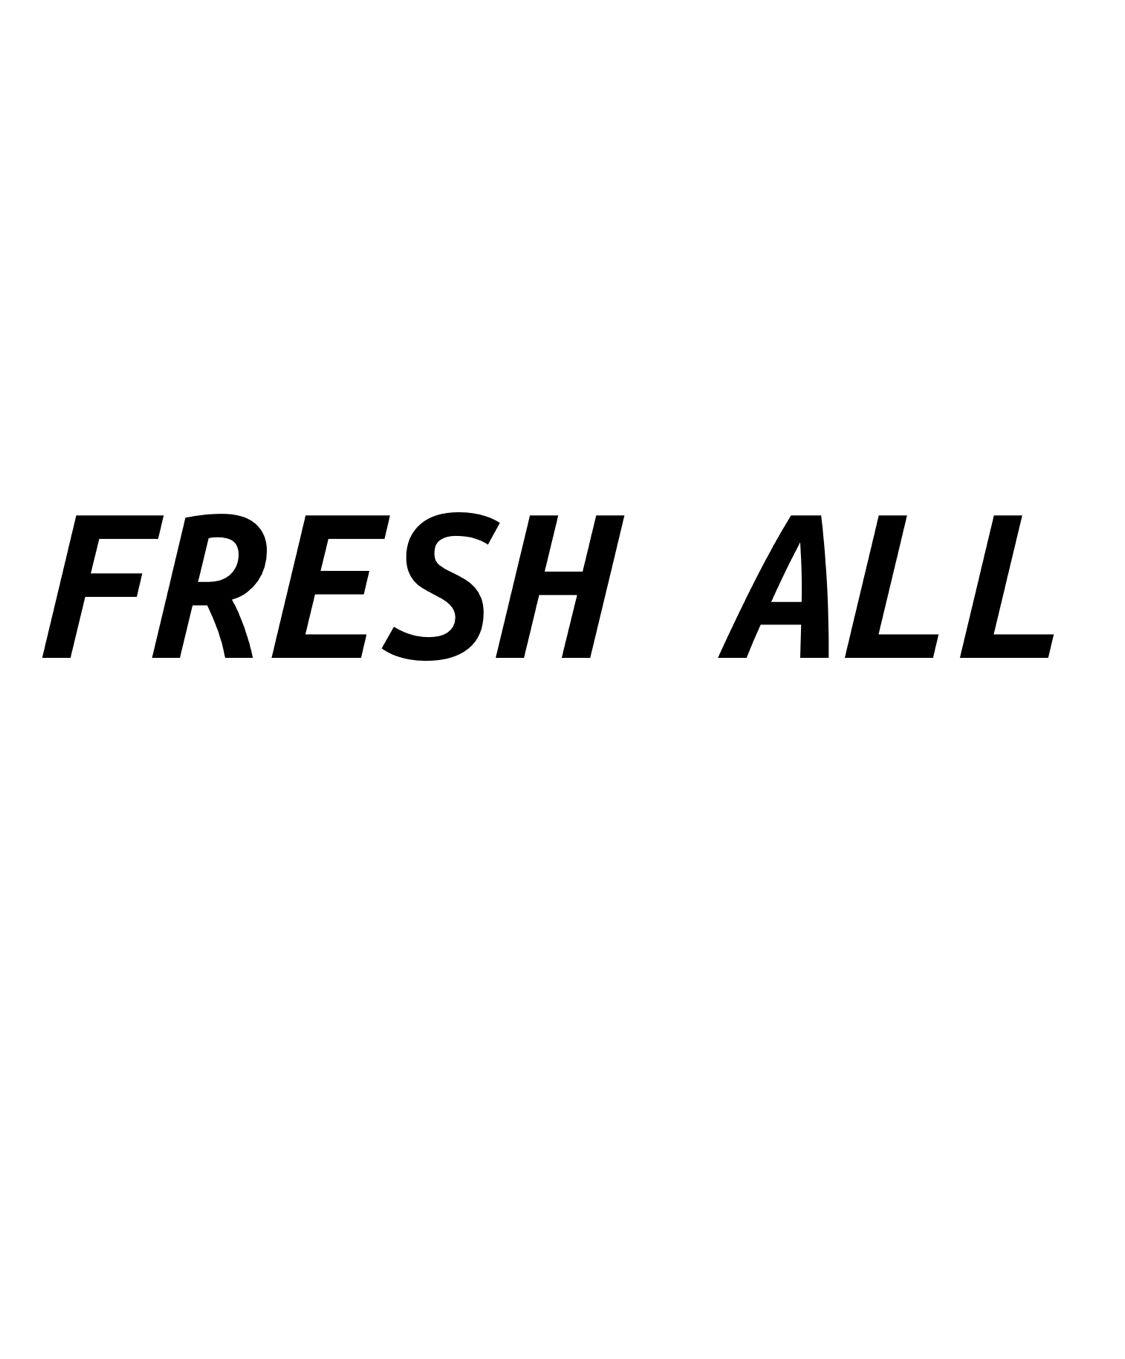 fresh all